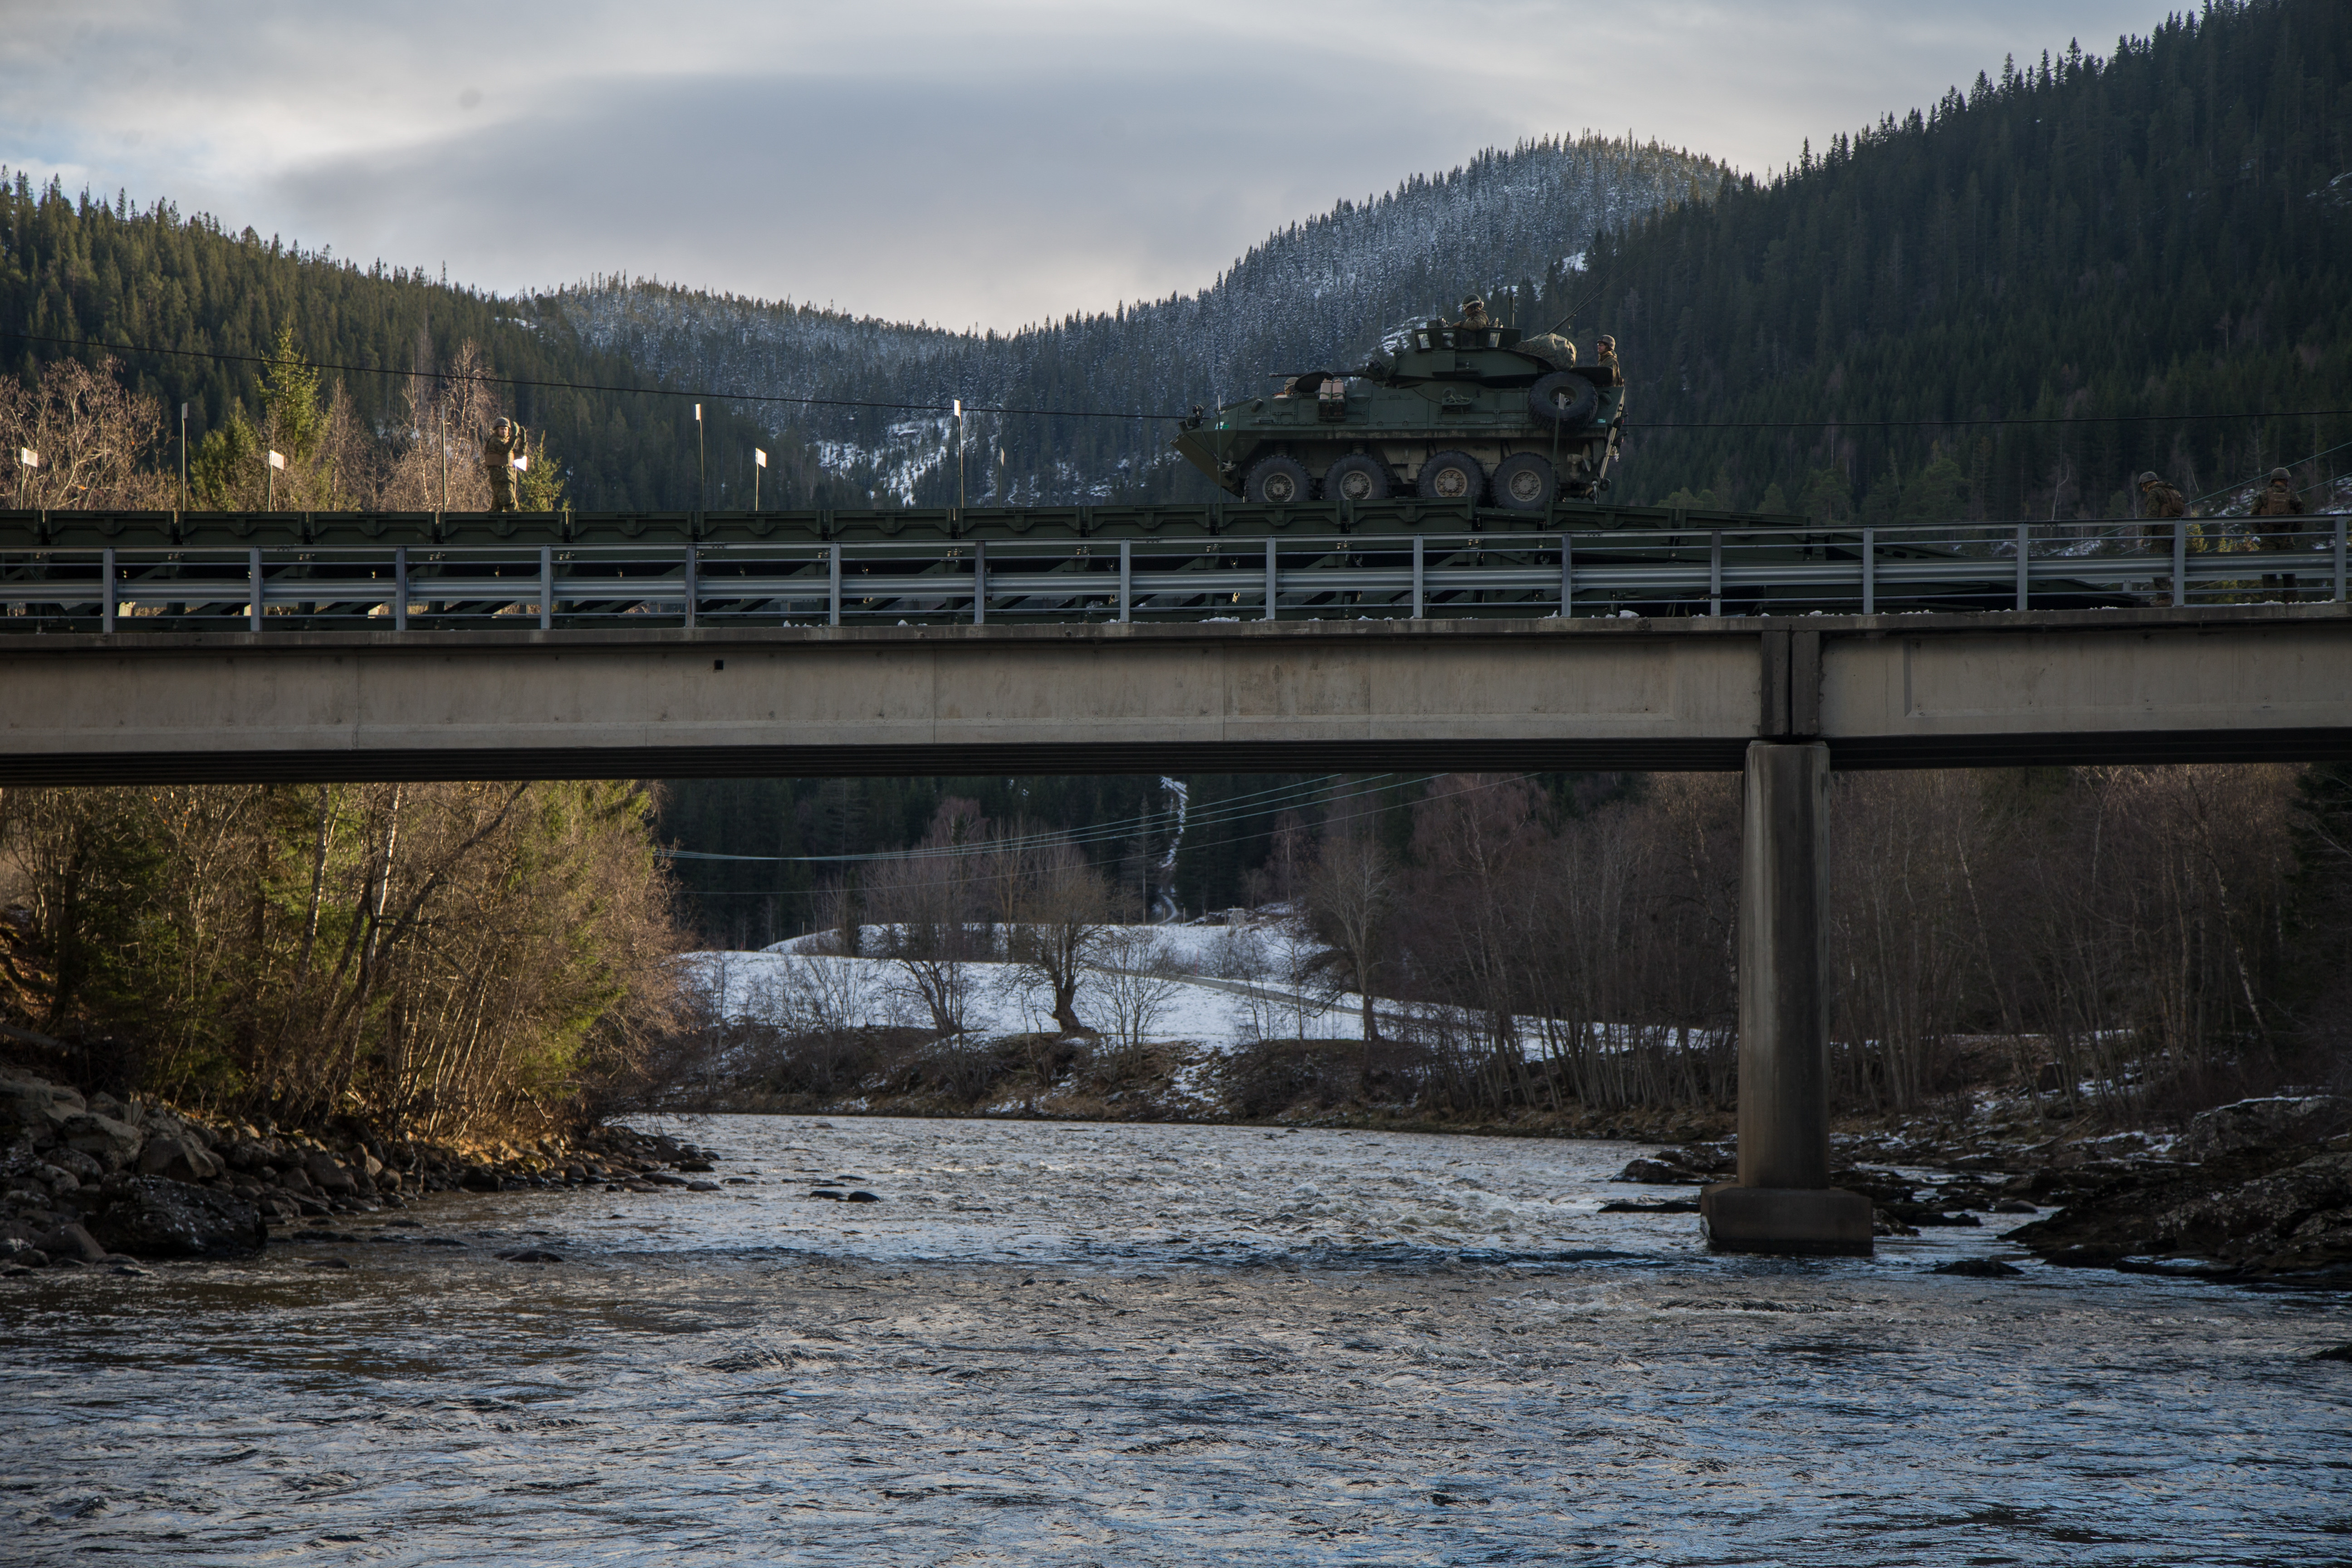 Средний балочный мост, построенный 2-й передовой логистической группой КМП США в районе н.п. Voll, Норвегия, в рамках  учения Trident Juncture 18, сразу после постройки по нему прошли около 100 боевых машин, фото сделано 30 октября 2018 года